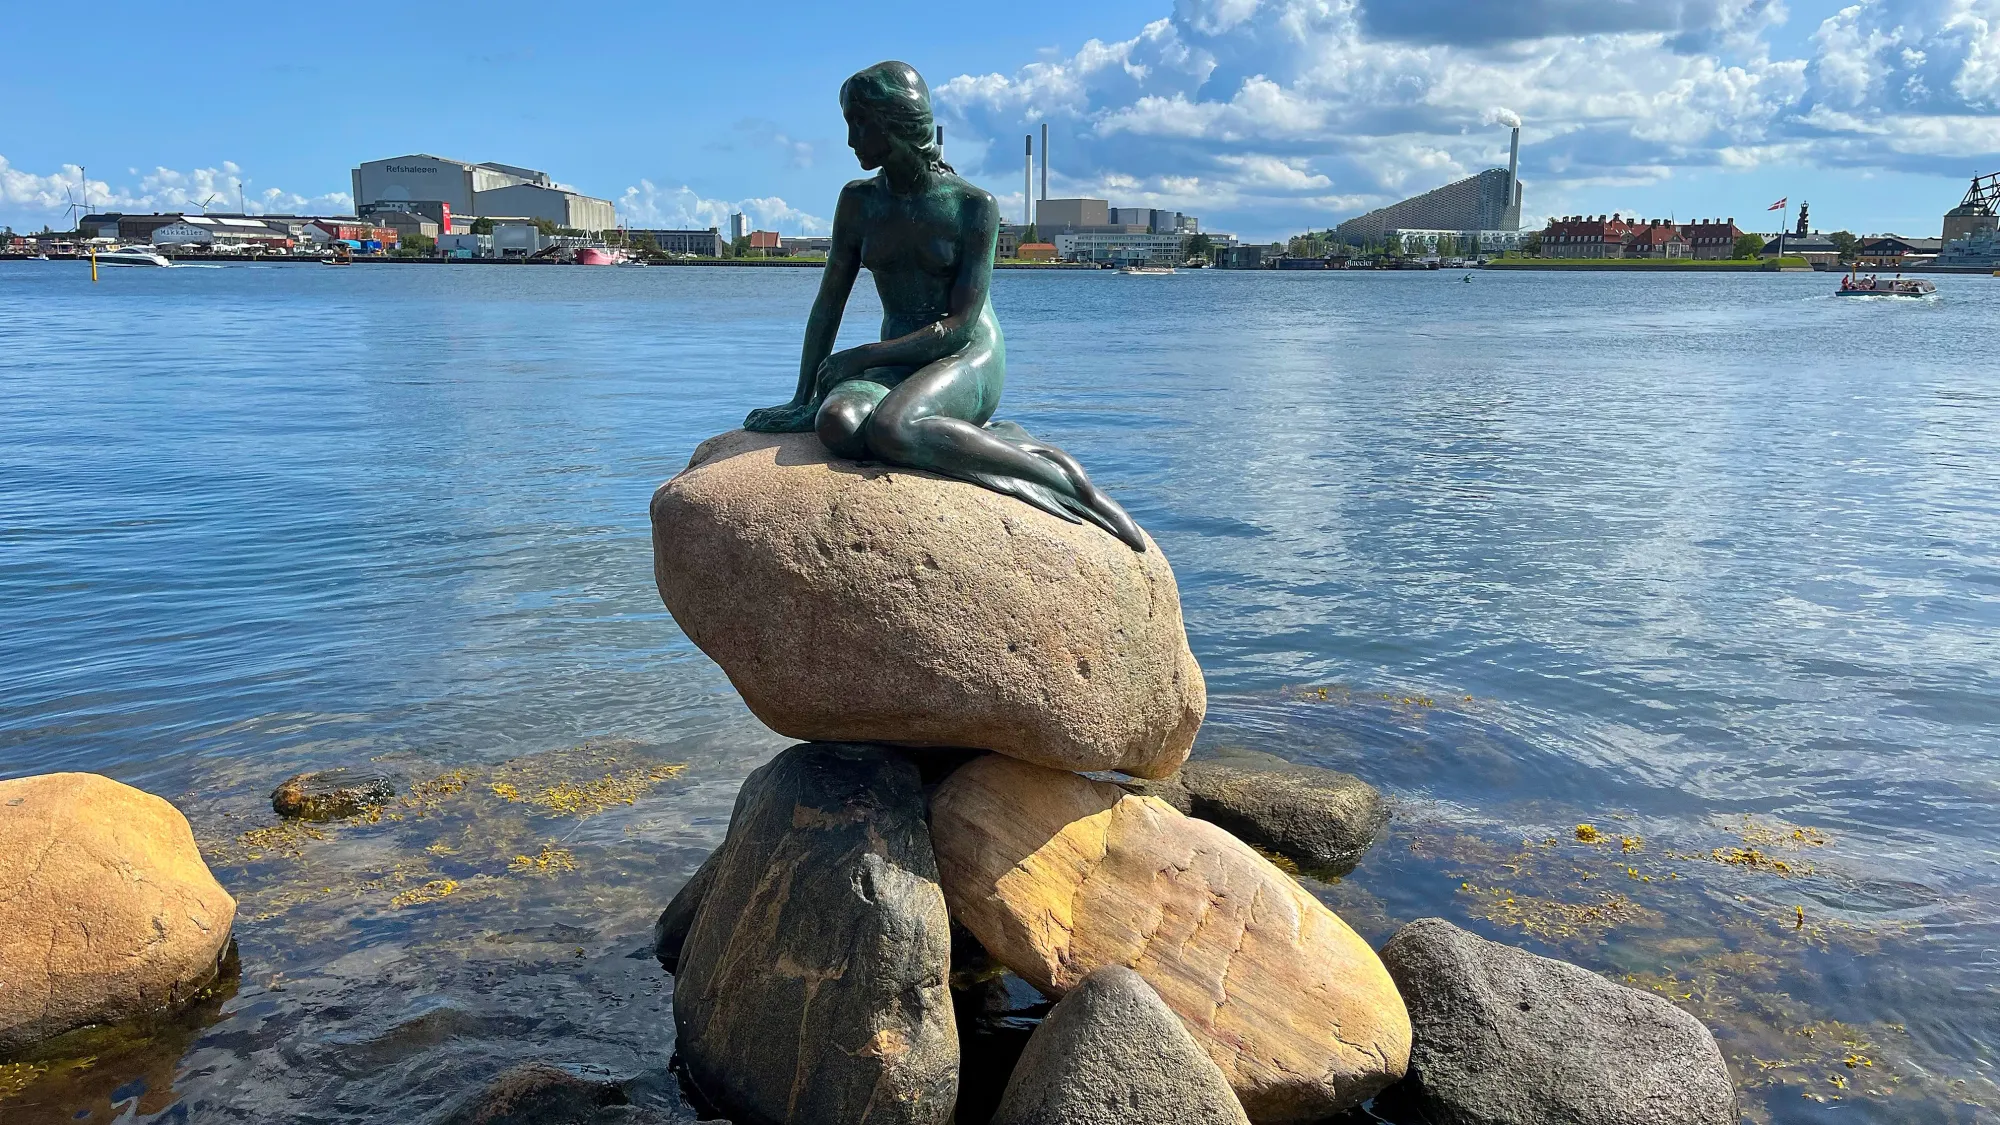 Bronze statue of the little mermaid overlooking the harbor